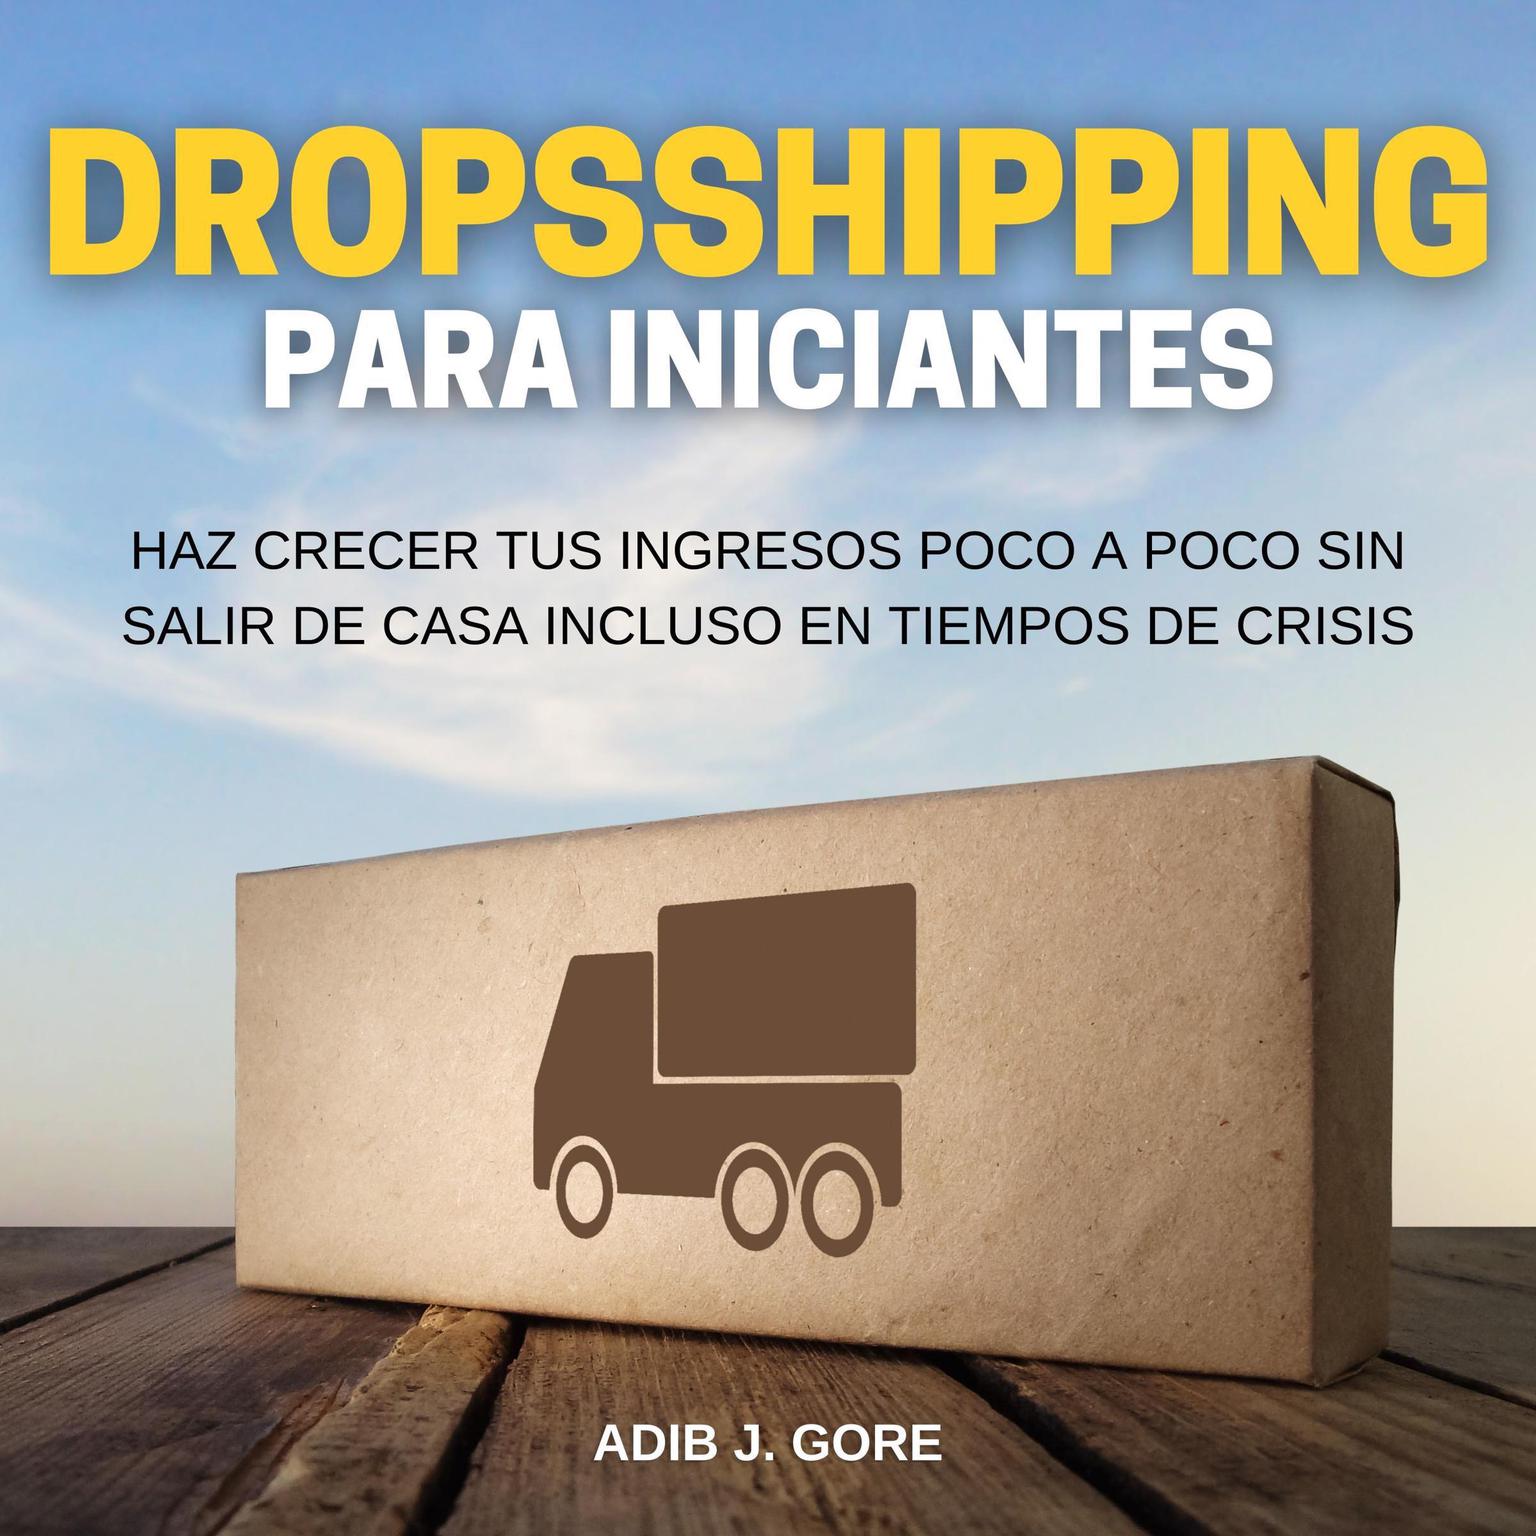 Dropshipping para incipiantes. Haz crecer tus ingresos poco a poco sin salir de casa incluso en tiempos de crisis Audiobook, by Adib J. Gore